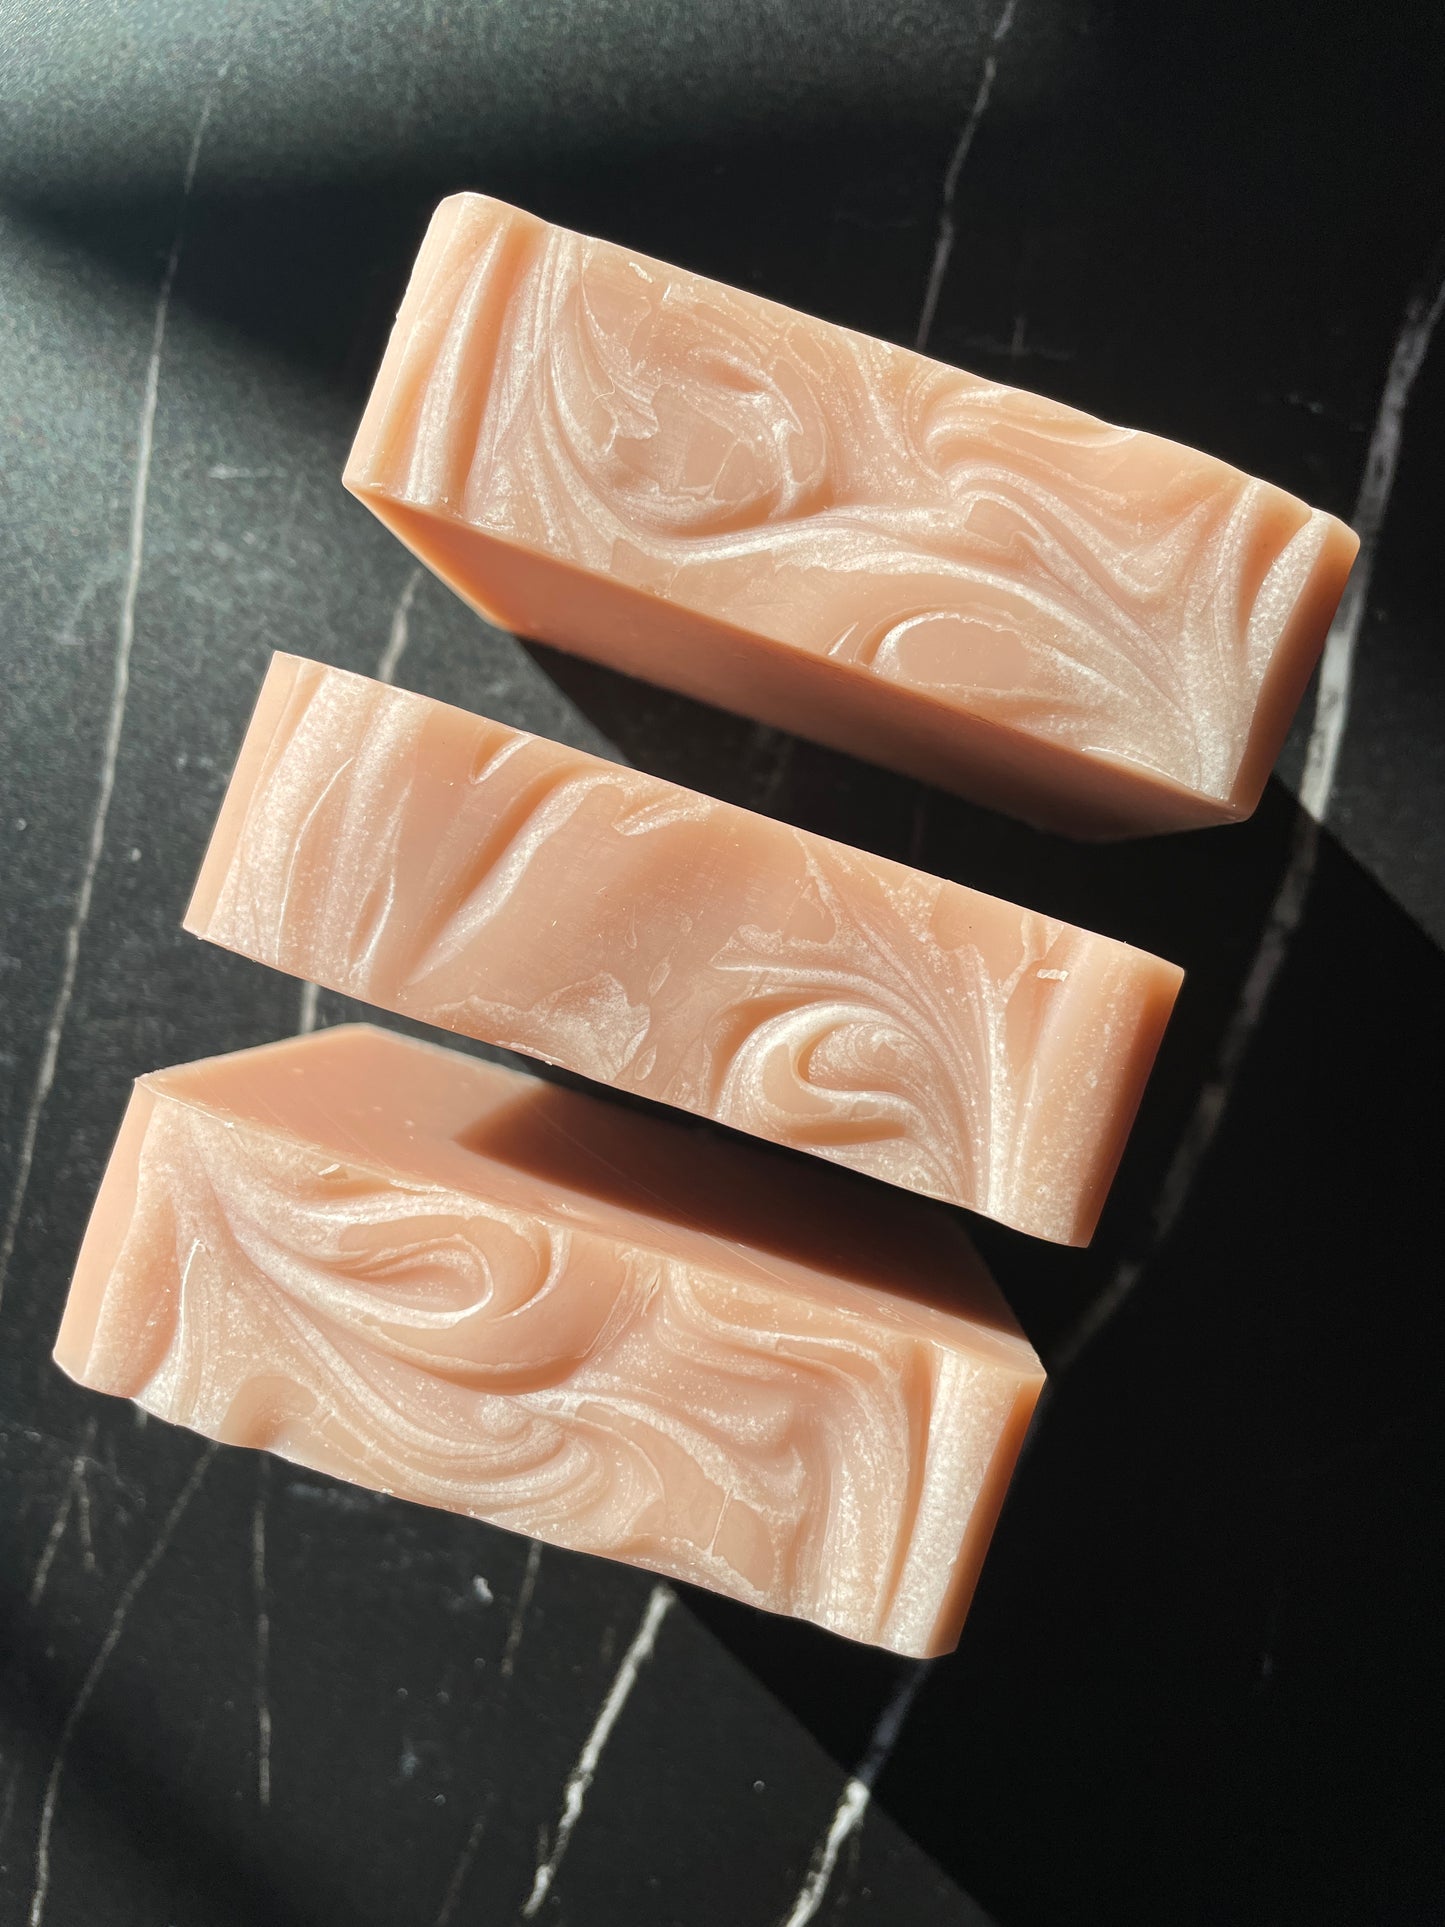 Blossom Soap: Peach Blossom + Wild Orange